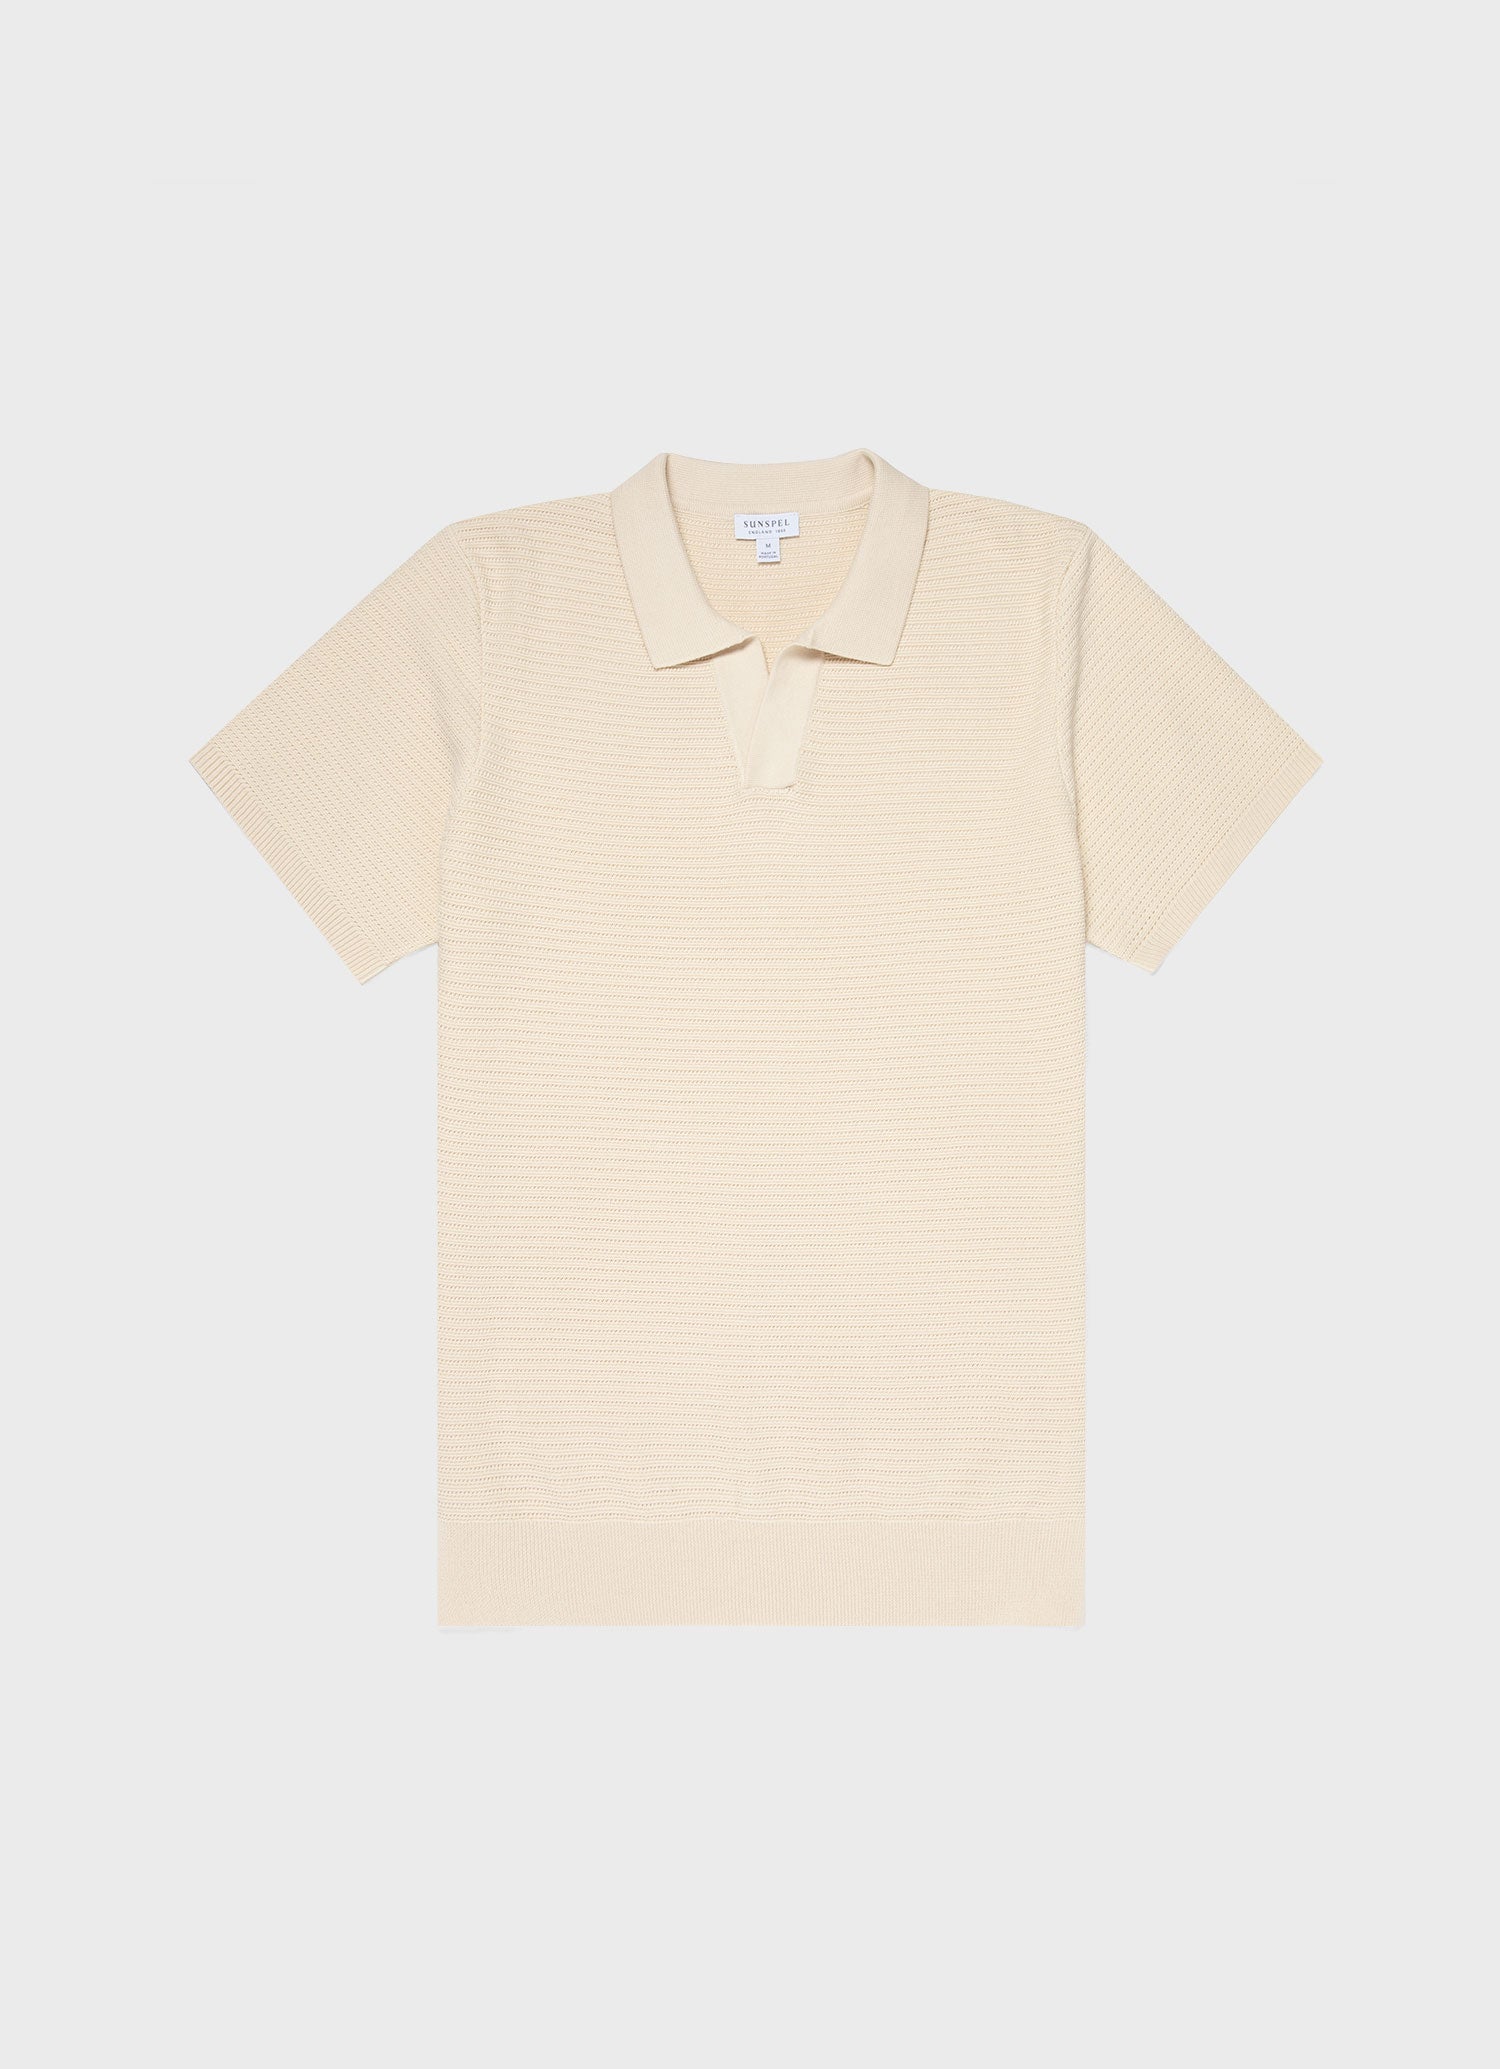 Men's Open Textured Polo Shirt in Ecru | Sunspel